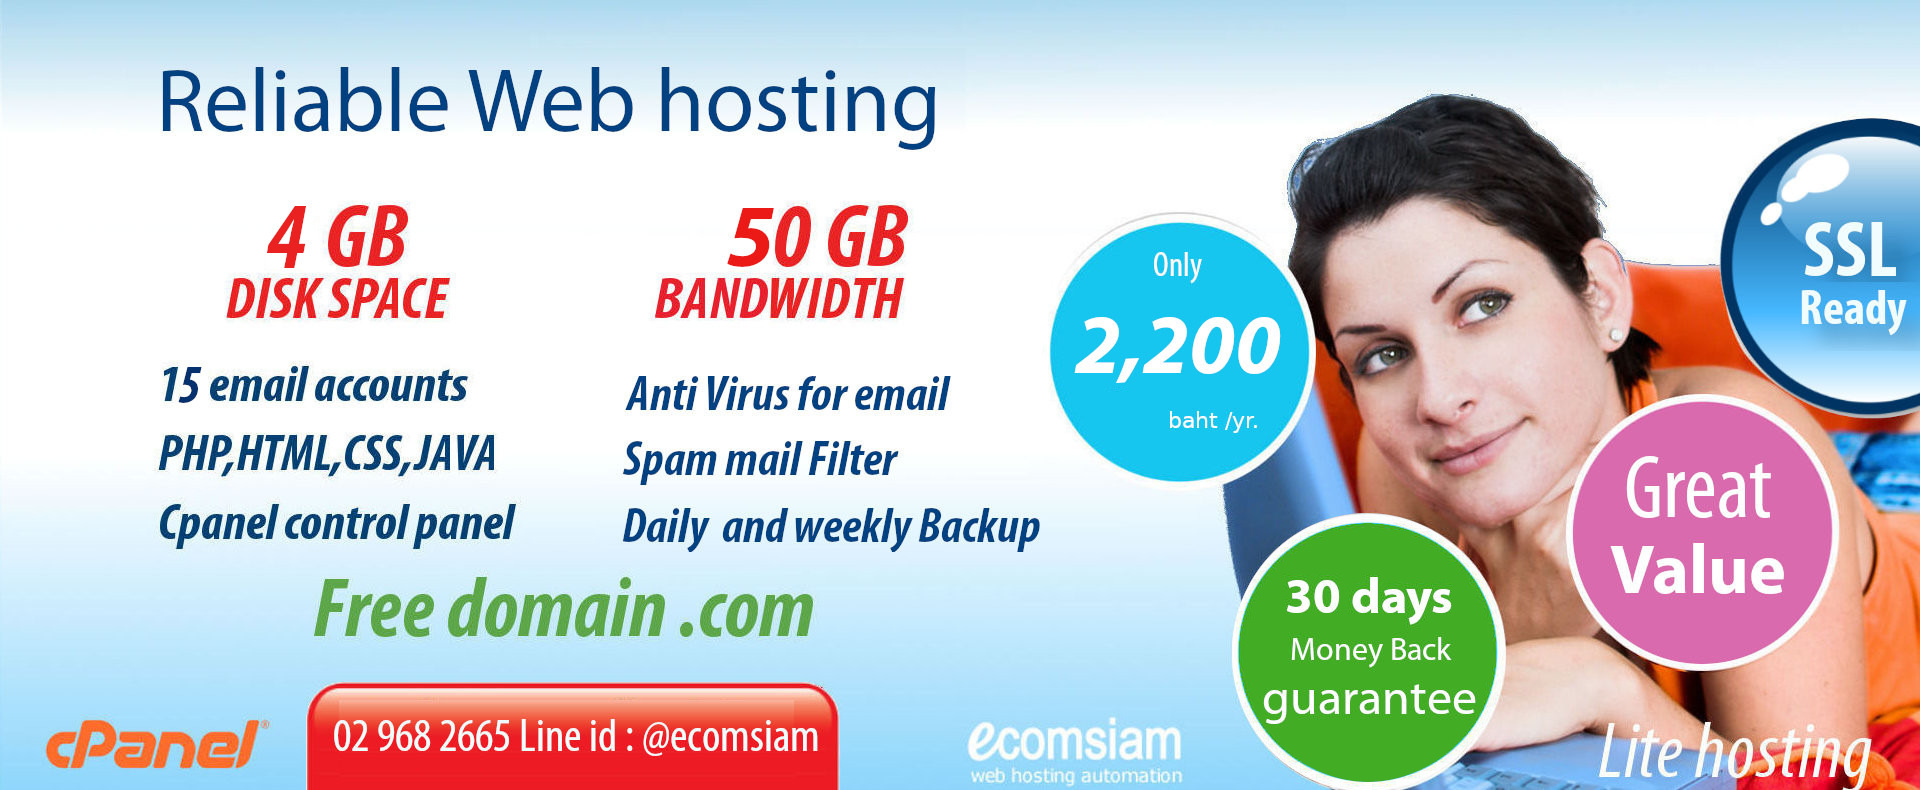 ฟรีโดเมน สำหรับ web hosting thailand -liteplan เว็บโฮสติ้งไทย ราคาเบาๆ ฟรี SSL เพียง 1600 บาทต่อปี